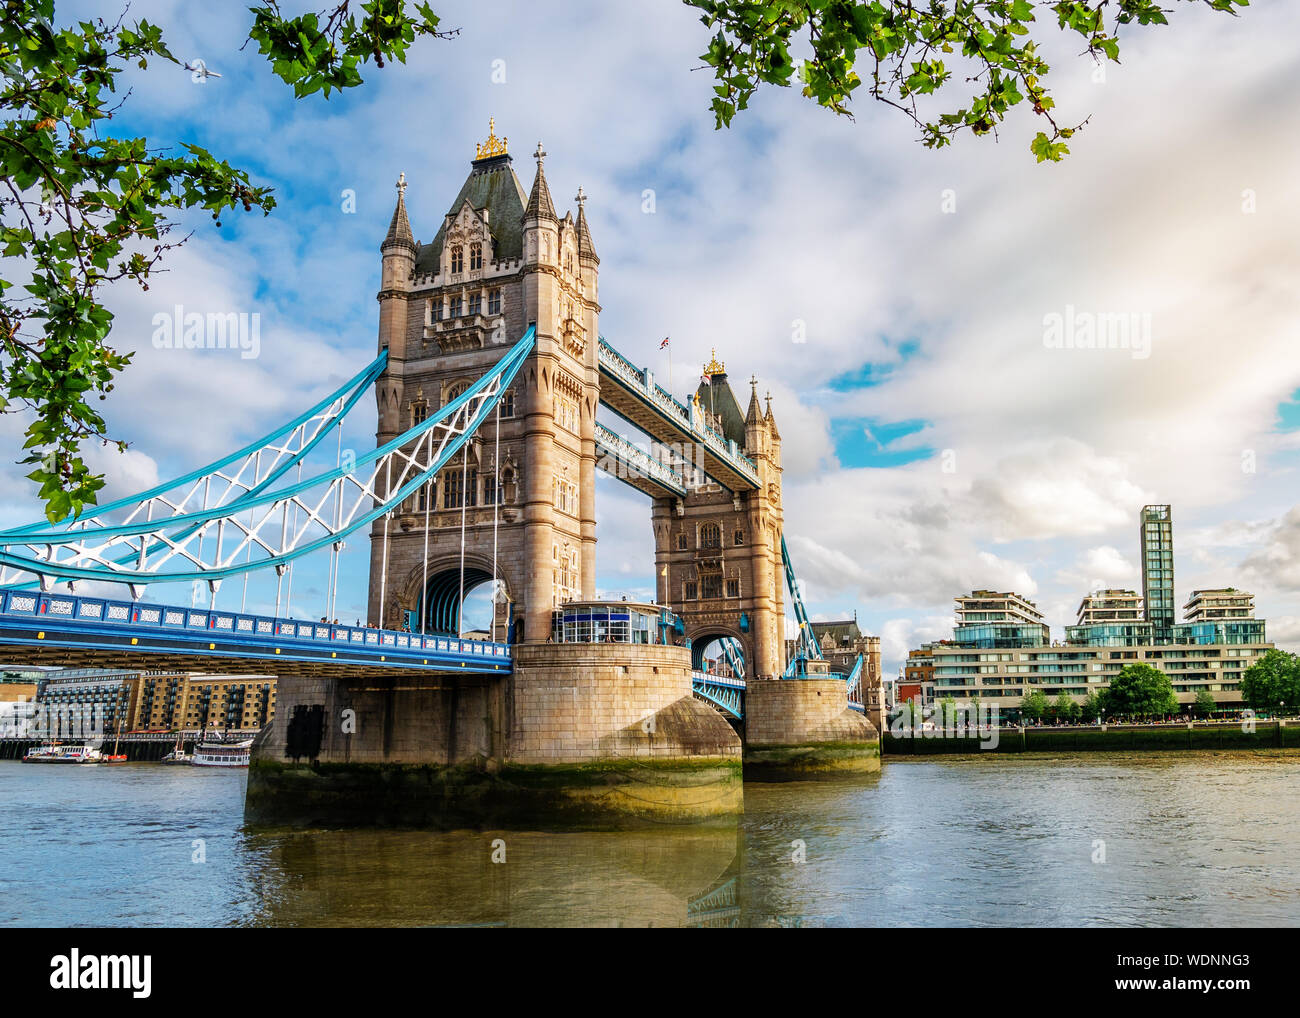 Vue grand angle du célèbre monument de London Tower Bridge sur la Tamise en Angleterre, Royaume-Uni Banque D'Images